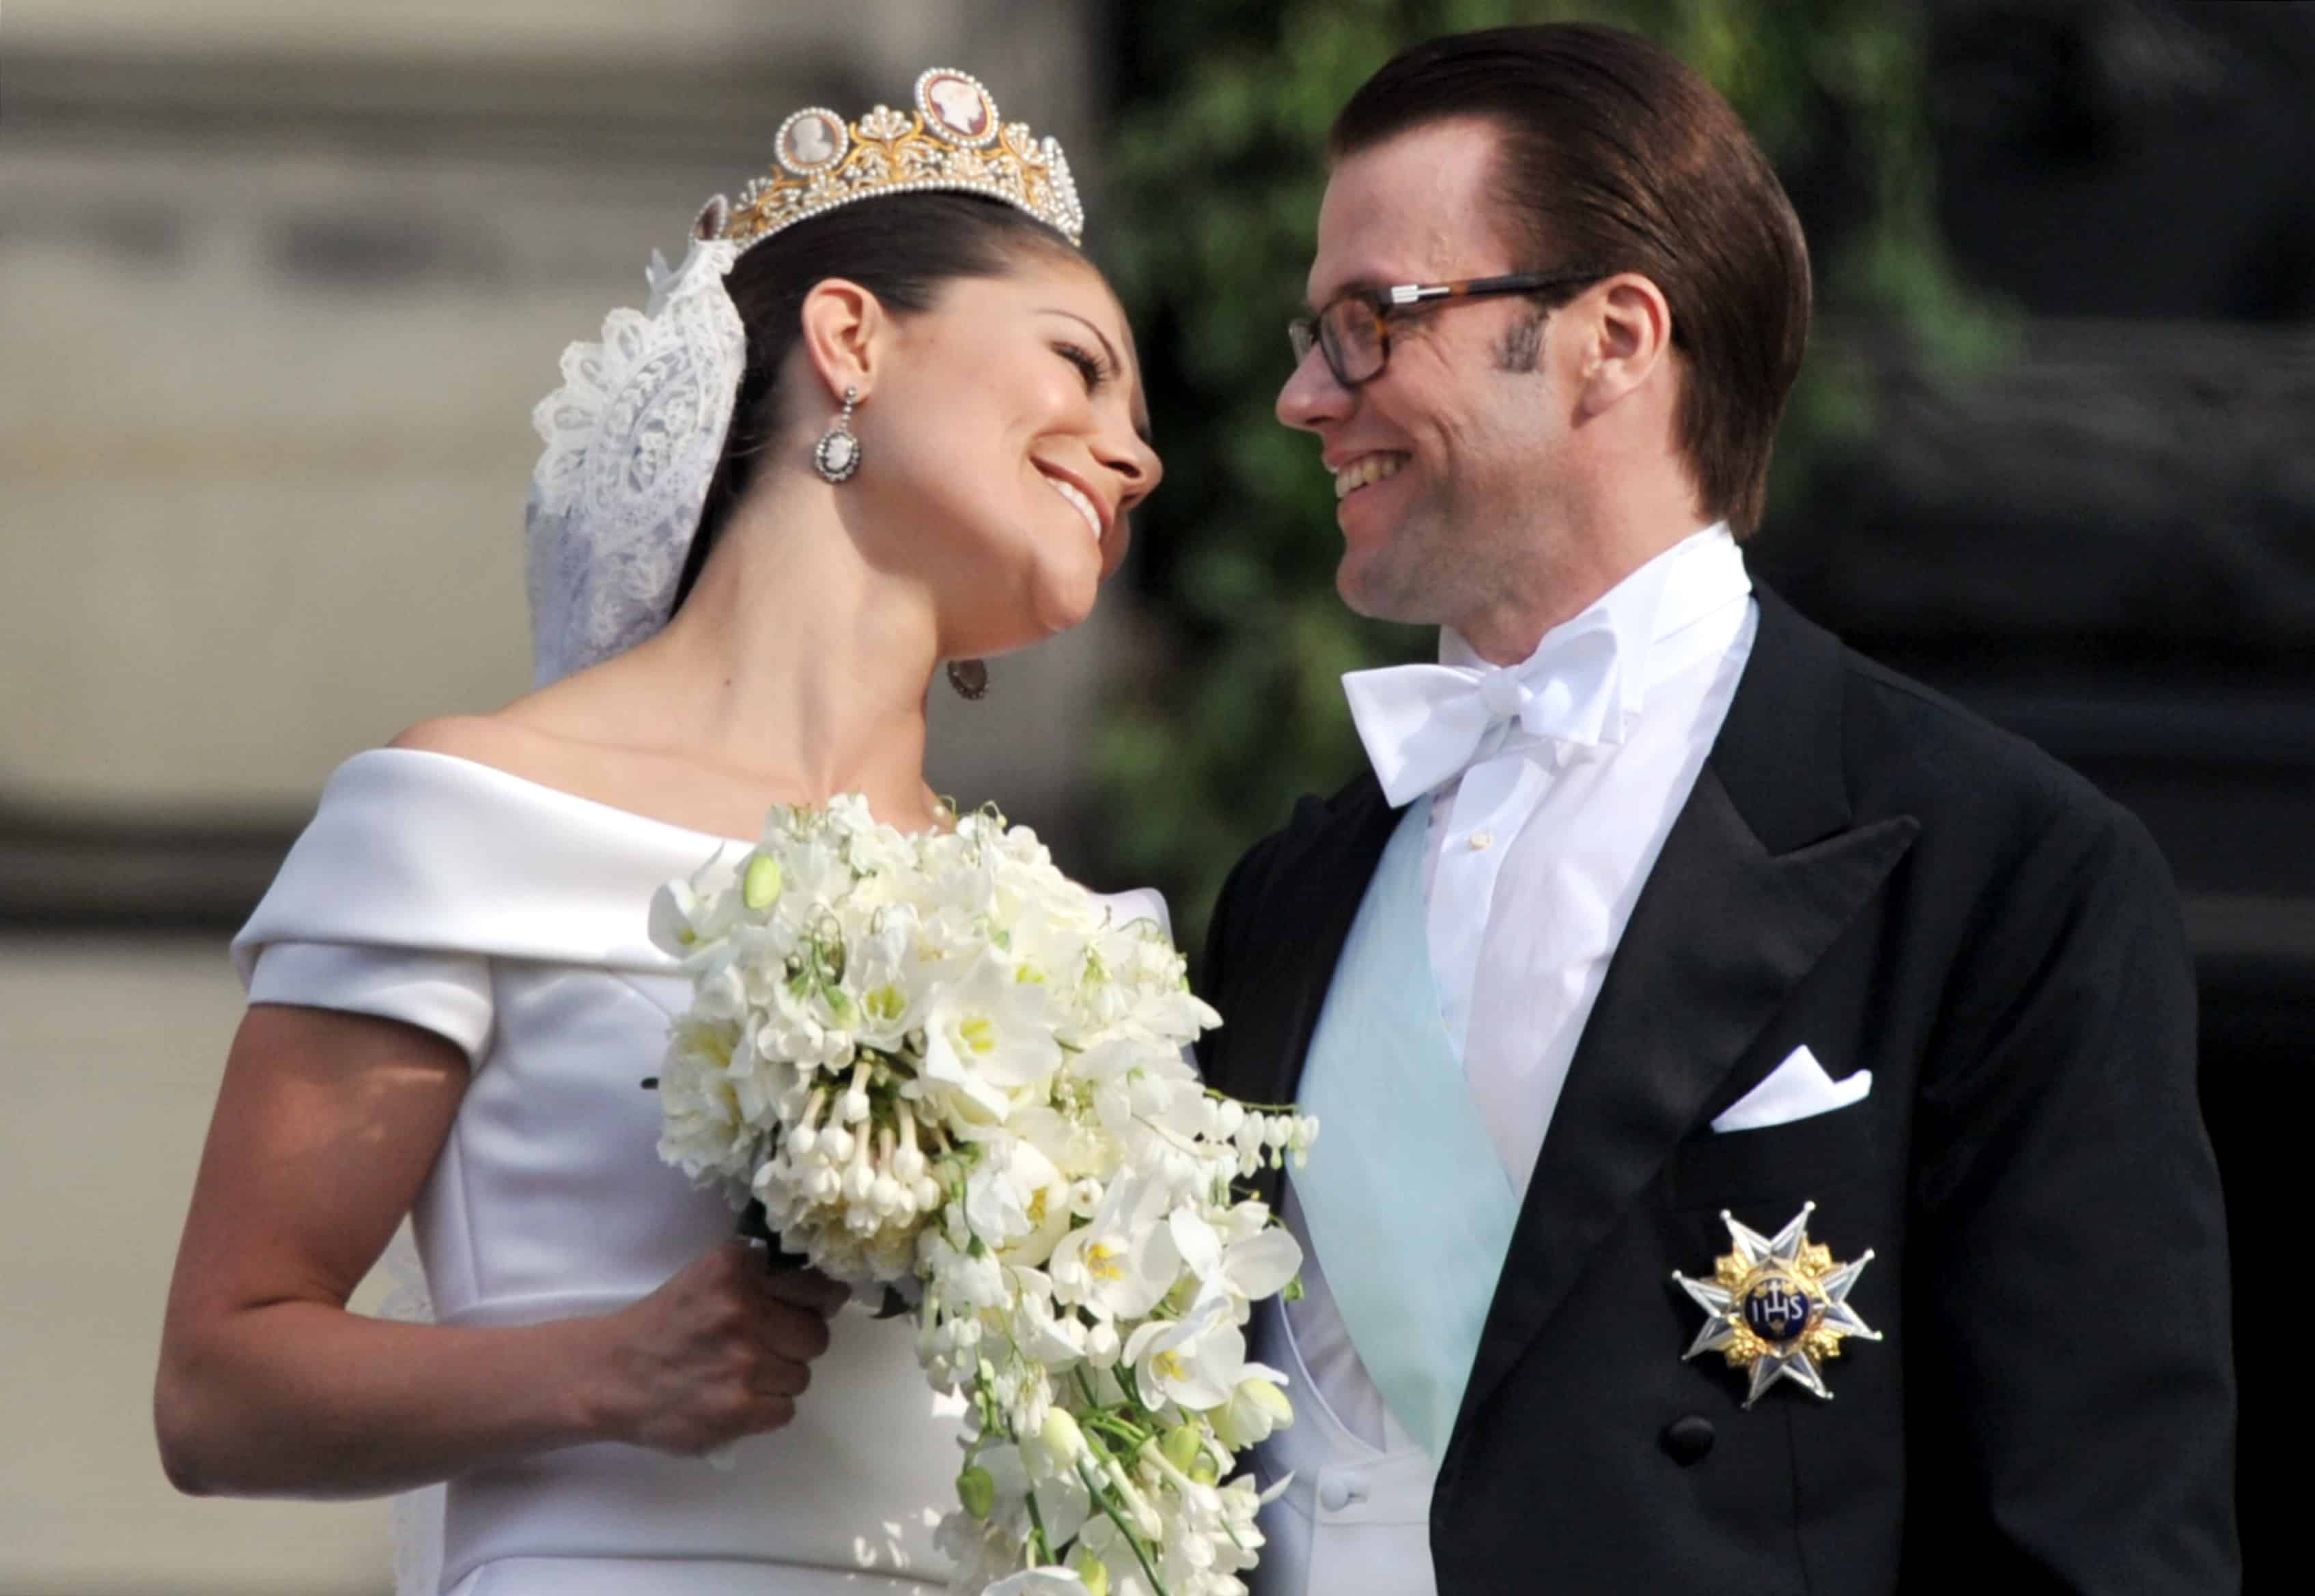 Prinz Daniel wurde durch seine Hochzeit mit Kronprinzessin Victoria Prinz von Schweden.